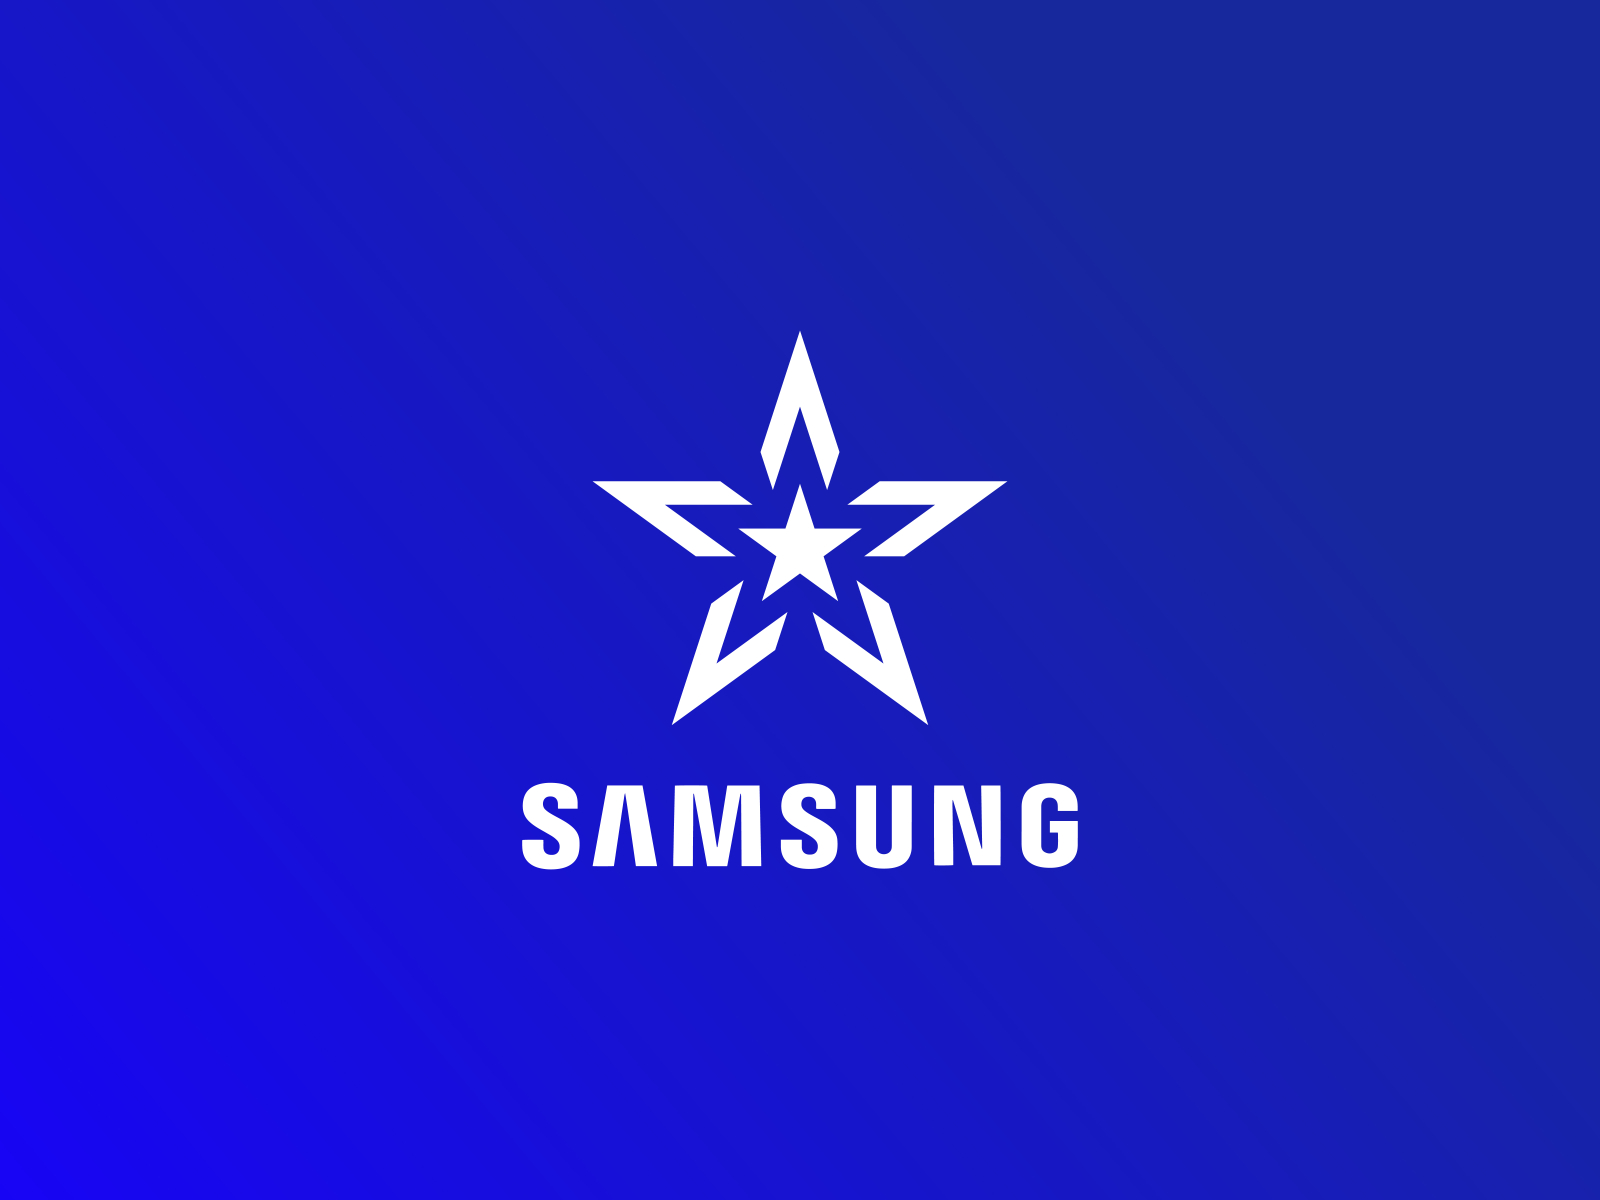 Samsung Star Logo Mark Redesign by Murat Bo on Dribbble